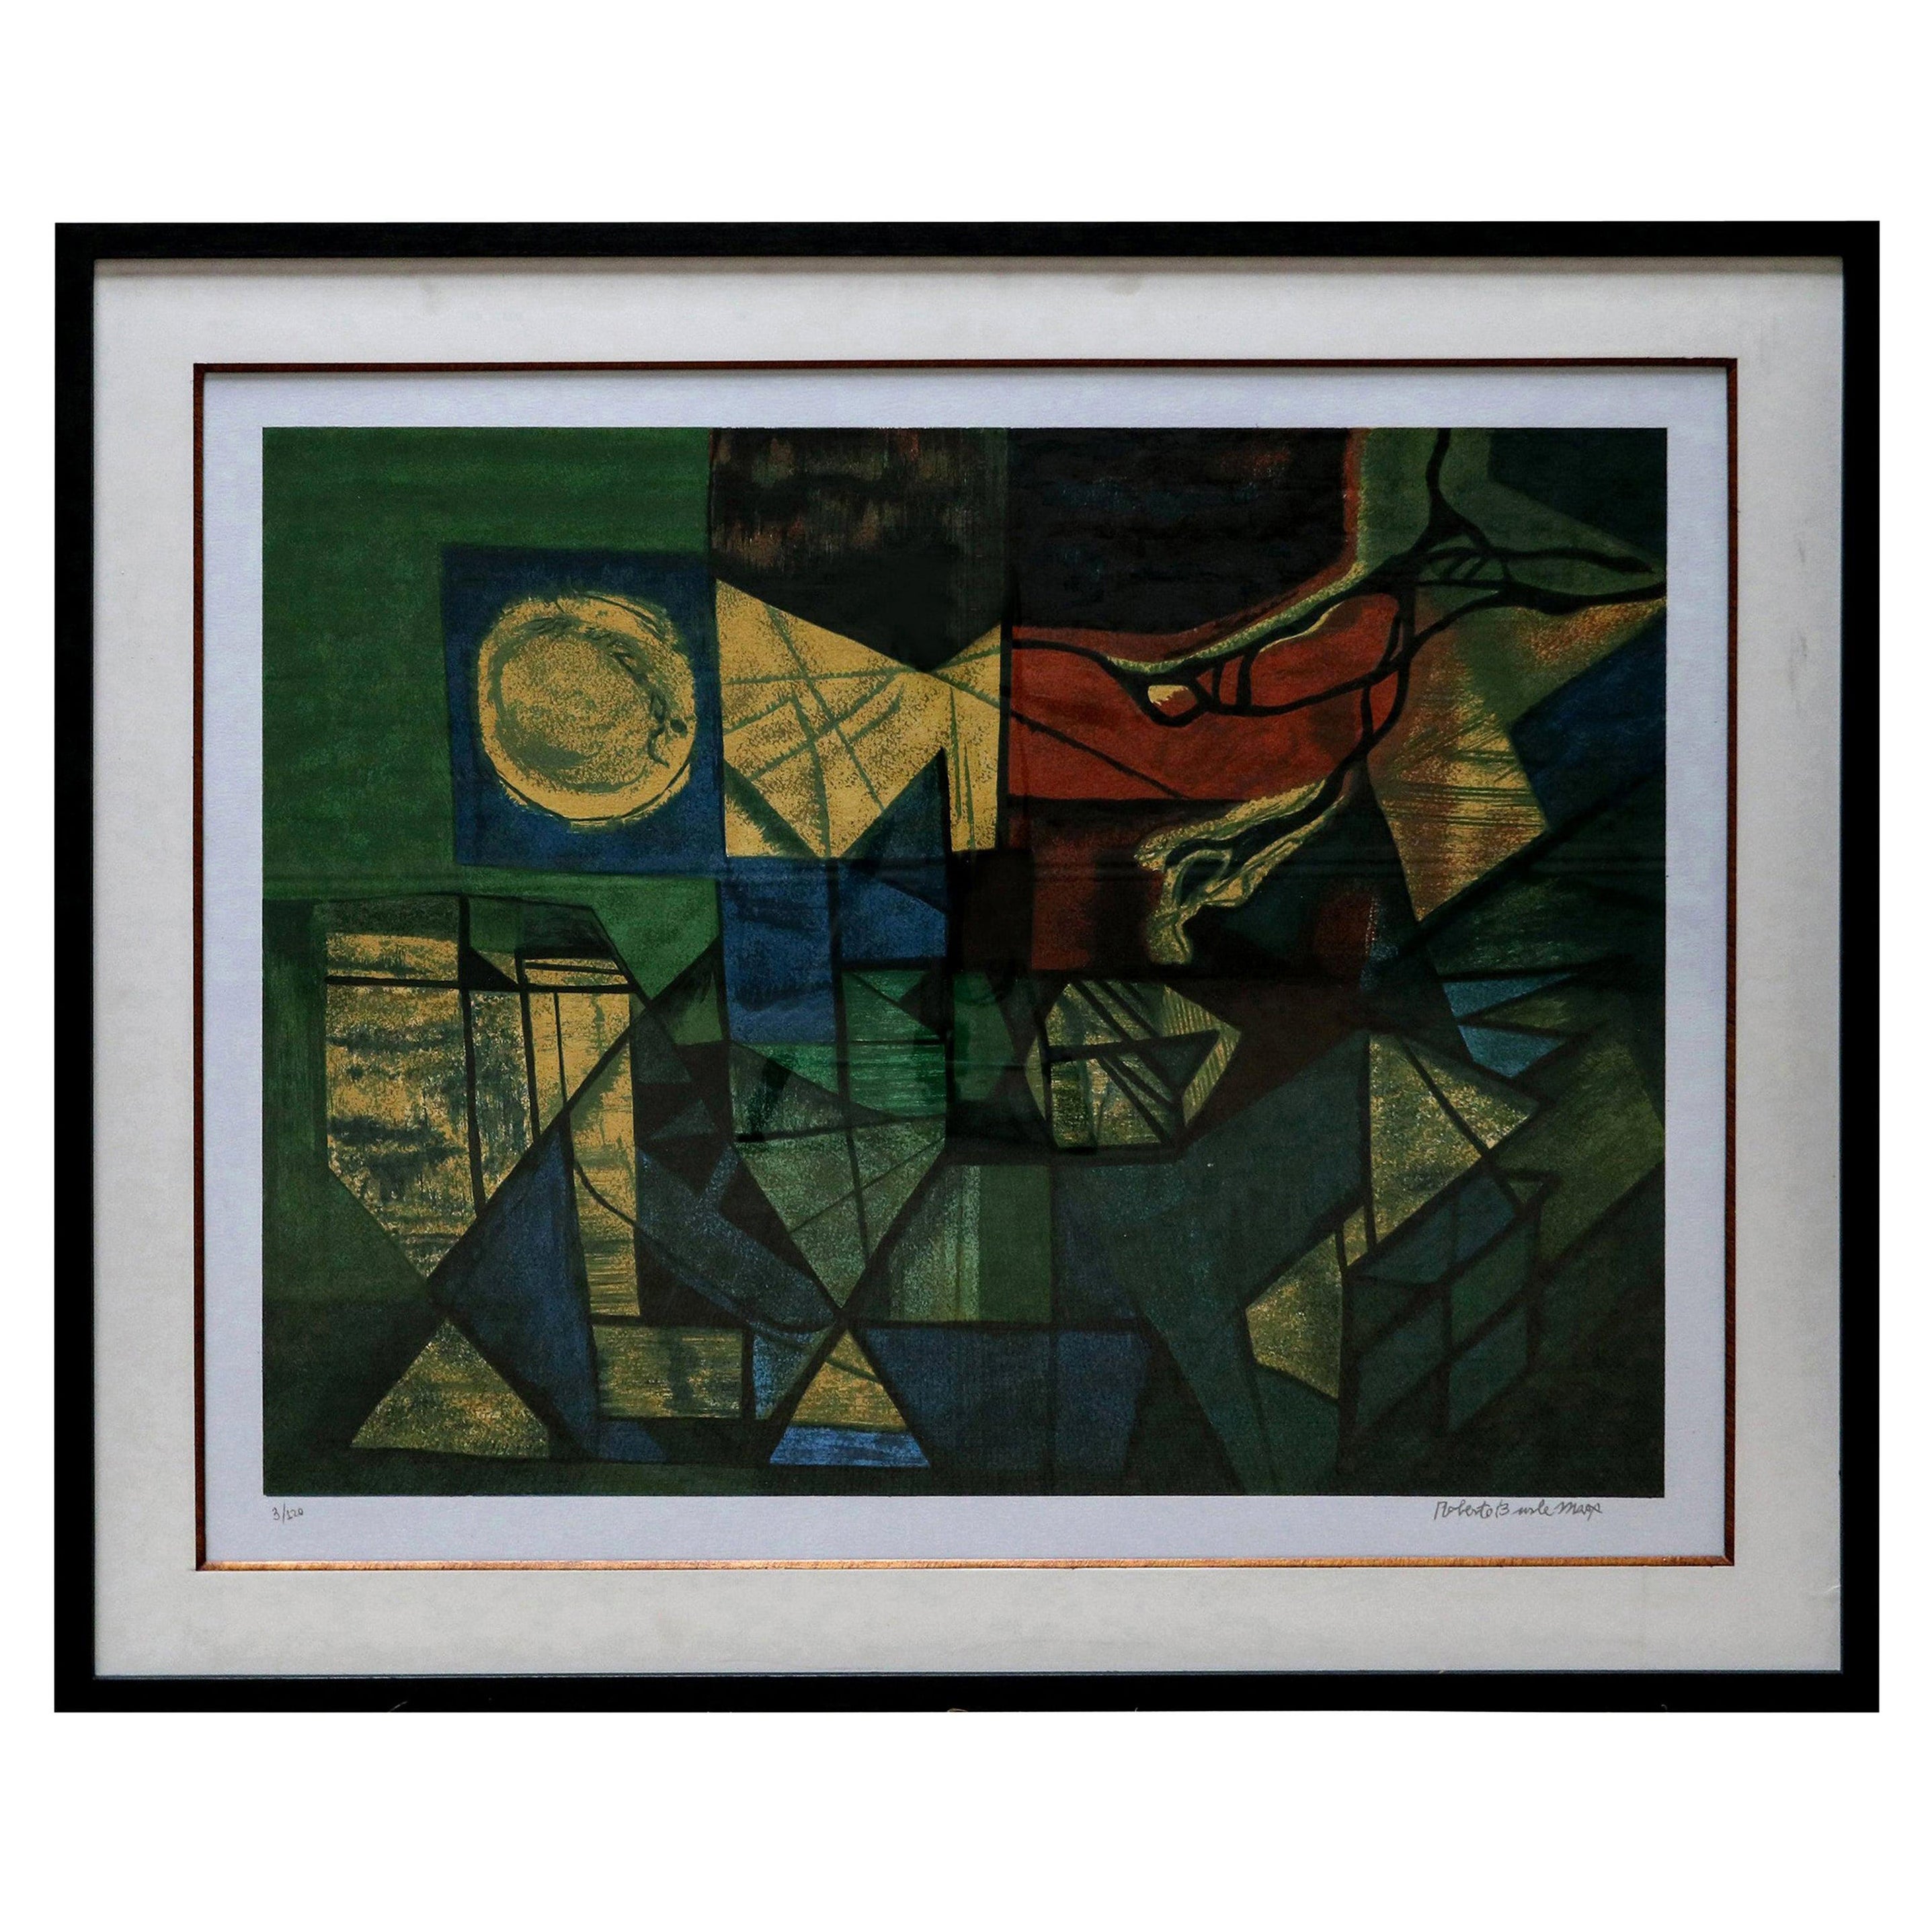 Impression abstraite en vert et jaune de Roberto Burle Marx, années 1960